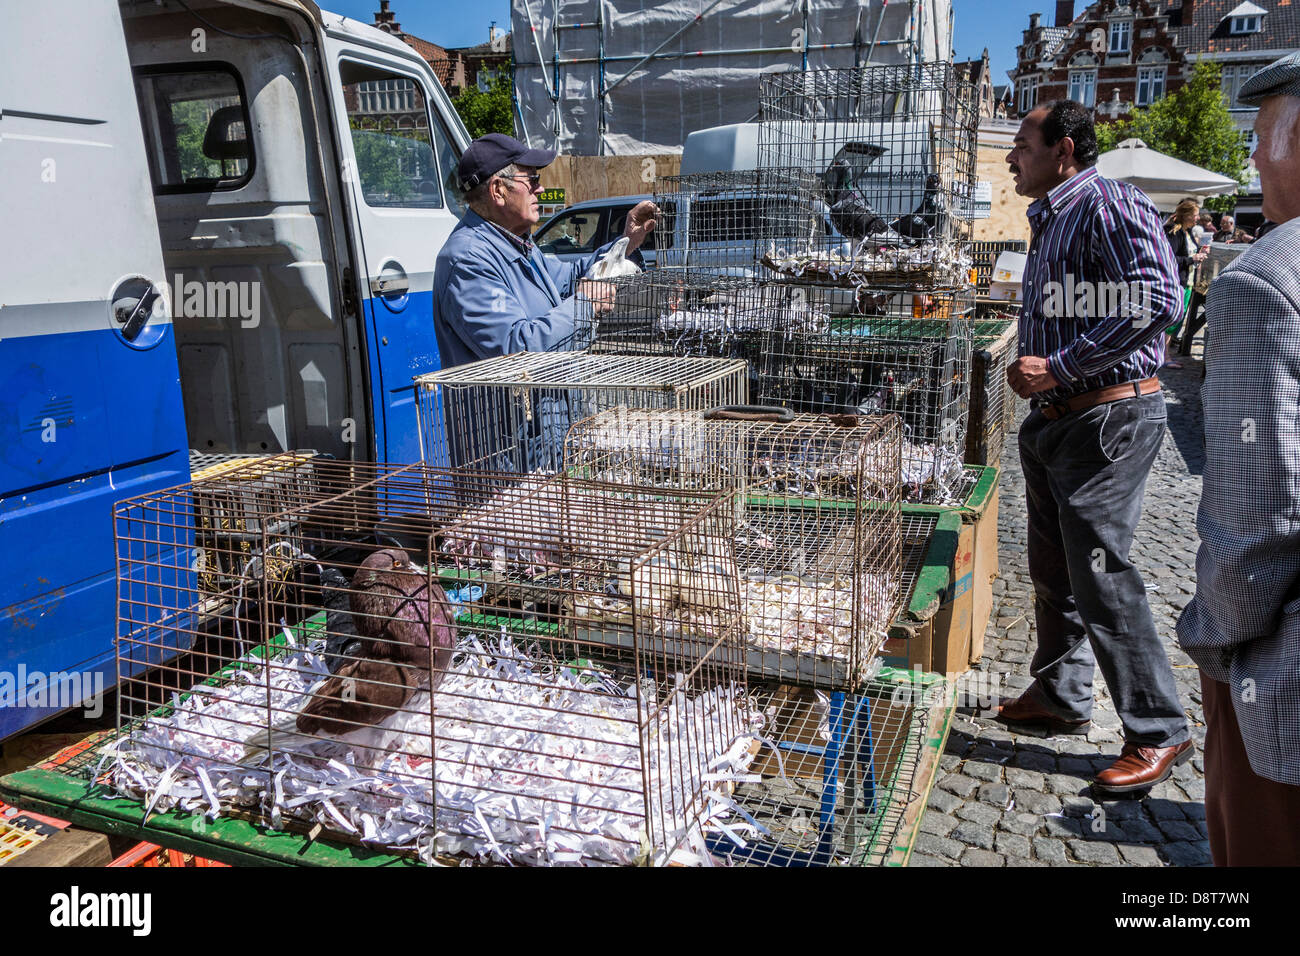 Stallholder al pollame stand con vendita di polli in gabbie di immigrato in animale domestico di mercato in Europa Foto Stock